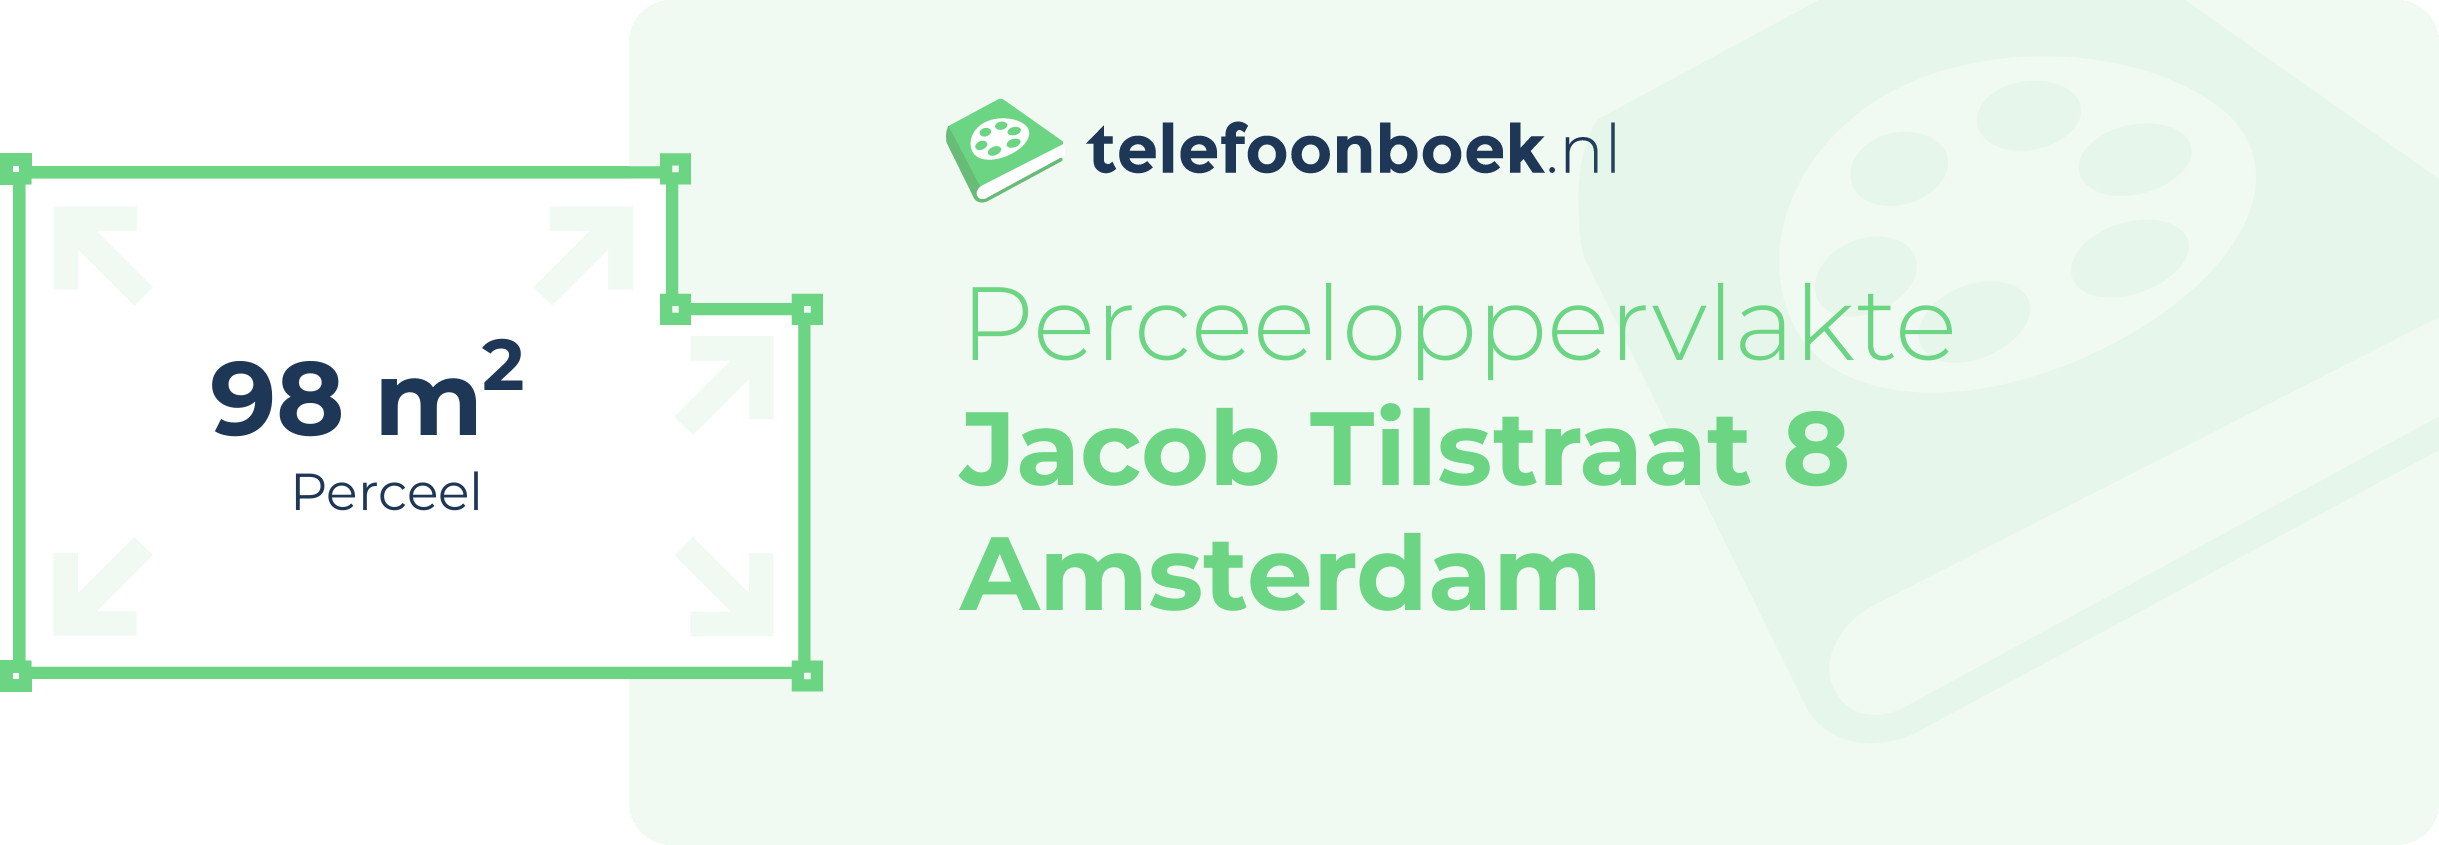 Perceeloppervlakte Jacob Tilstraat 8 Amsterdam